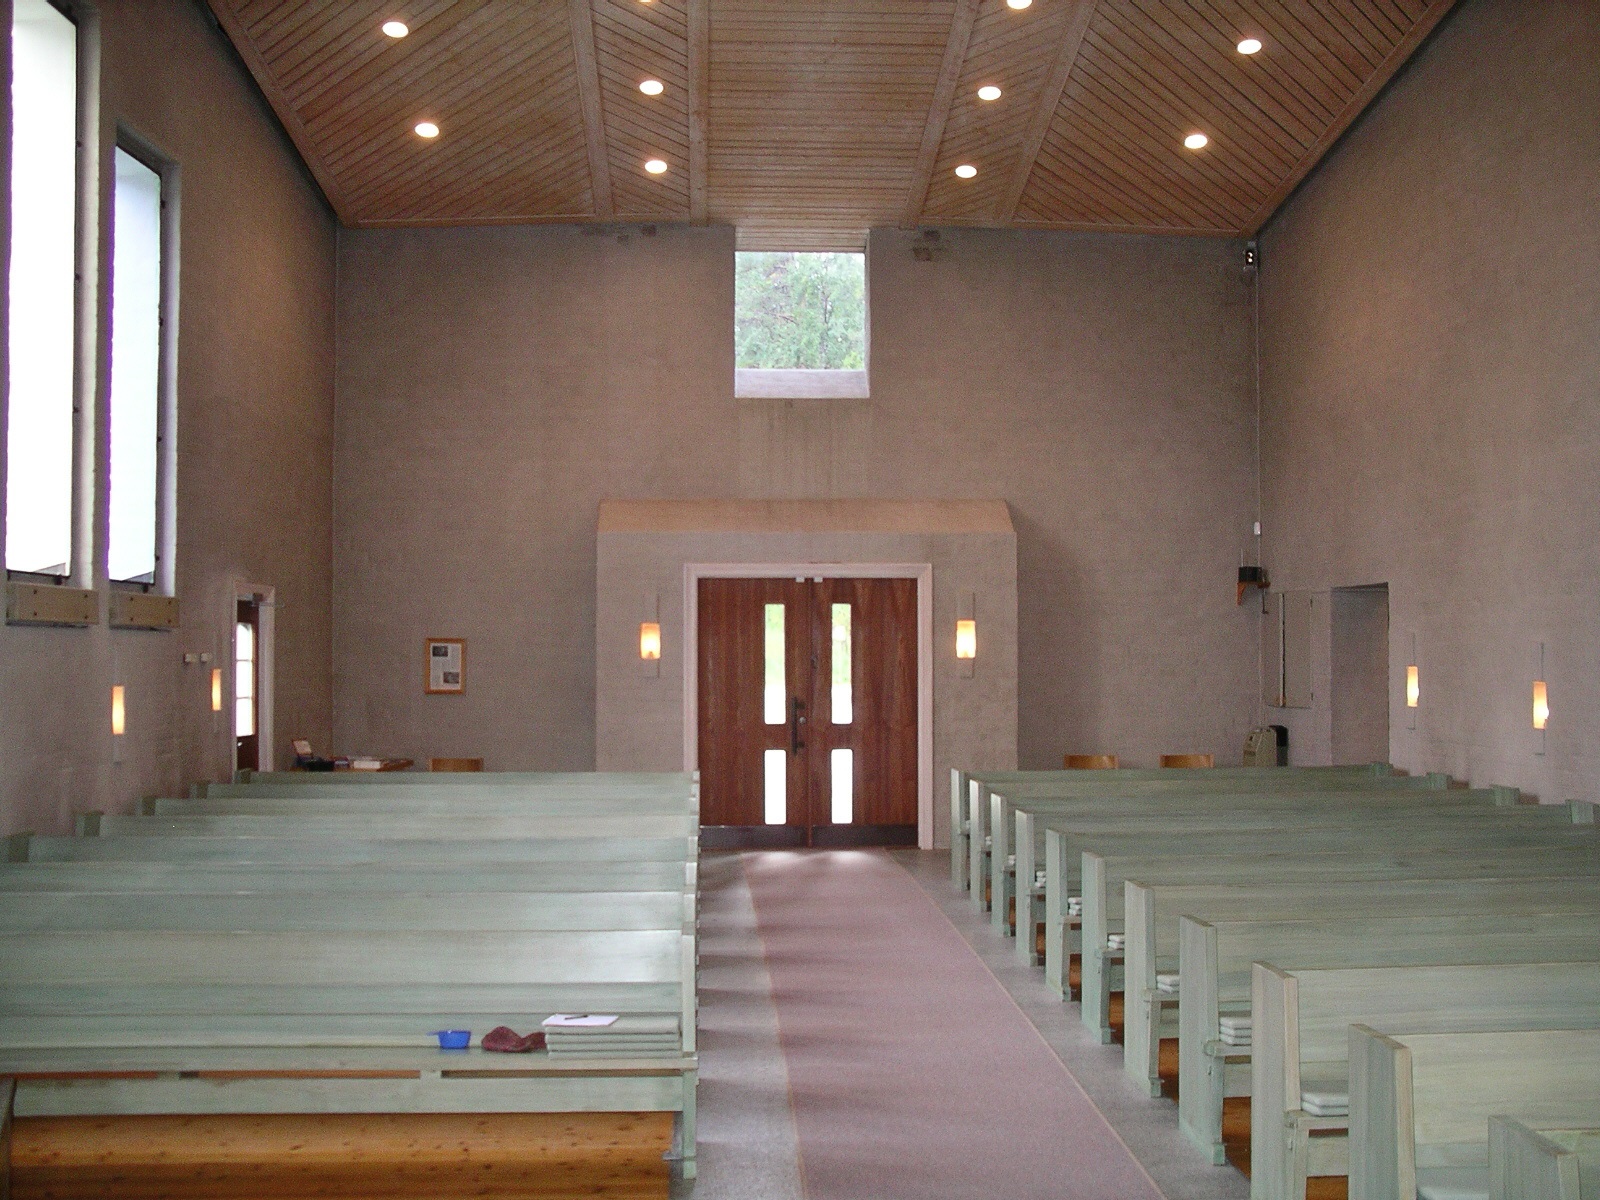 Åsarne nya kyrka, interiör, kyrkorummet mot entré i väster.

Isa Lindkvist & Christina Persson, bebyggelseantikvarier vid Jämtlands läns museum, inventerade kyrkan mellan 2005-2006. De var också fotografer till bilderna. 